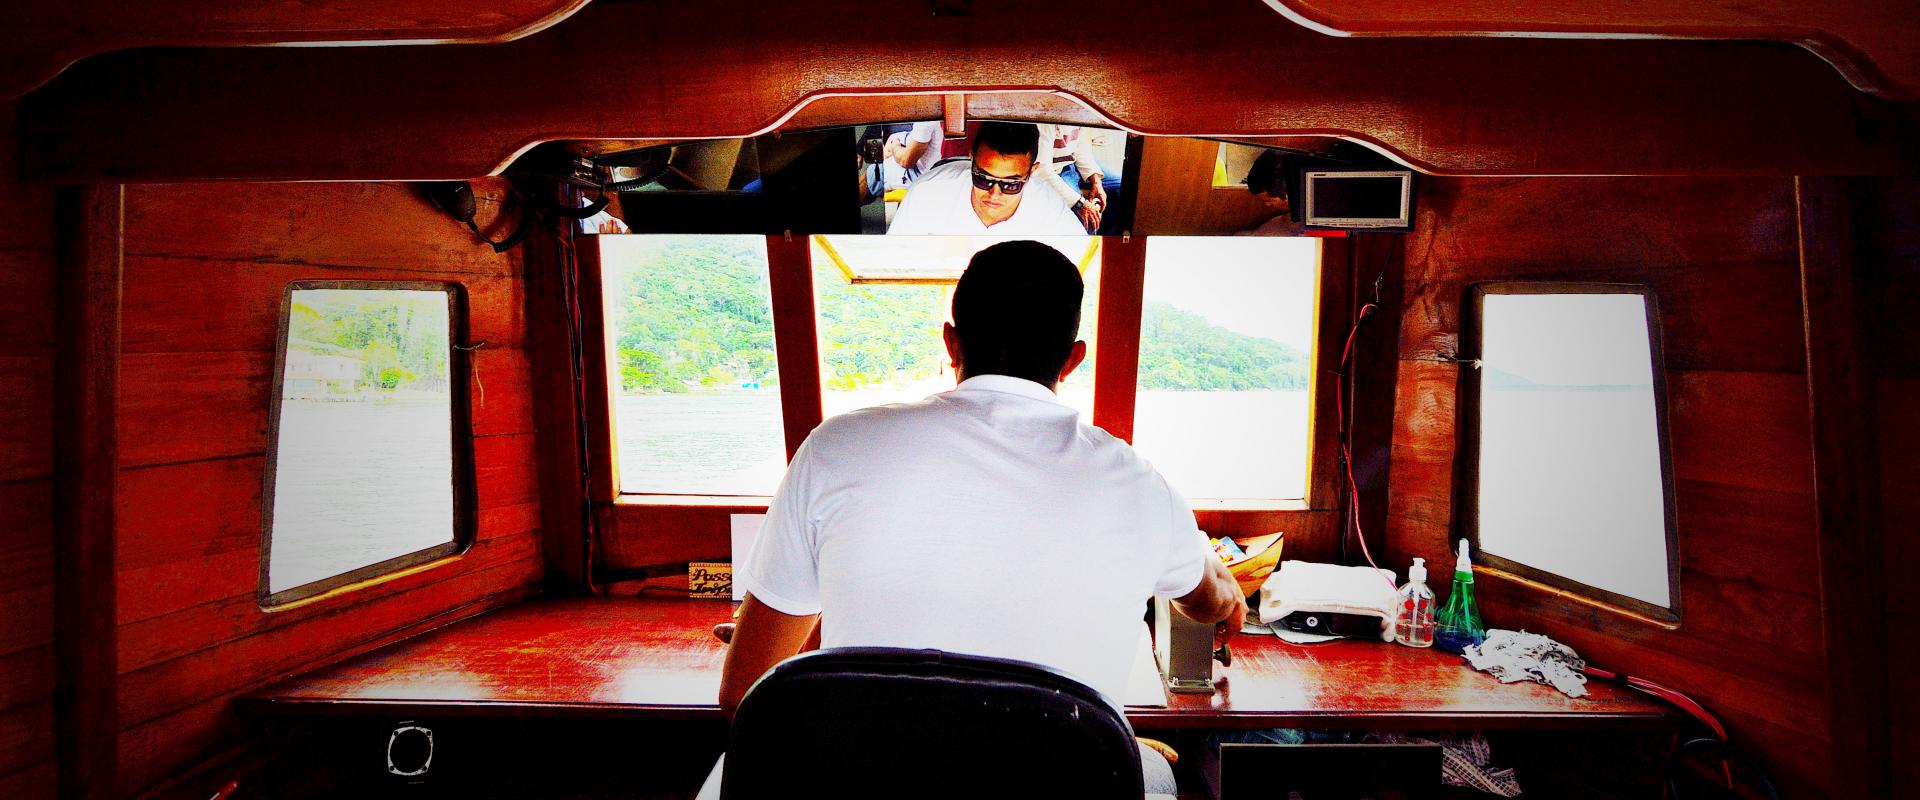 In regola a bordo: i documenti obbligatori in barca — Indemar